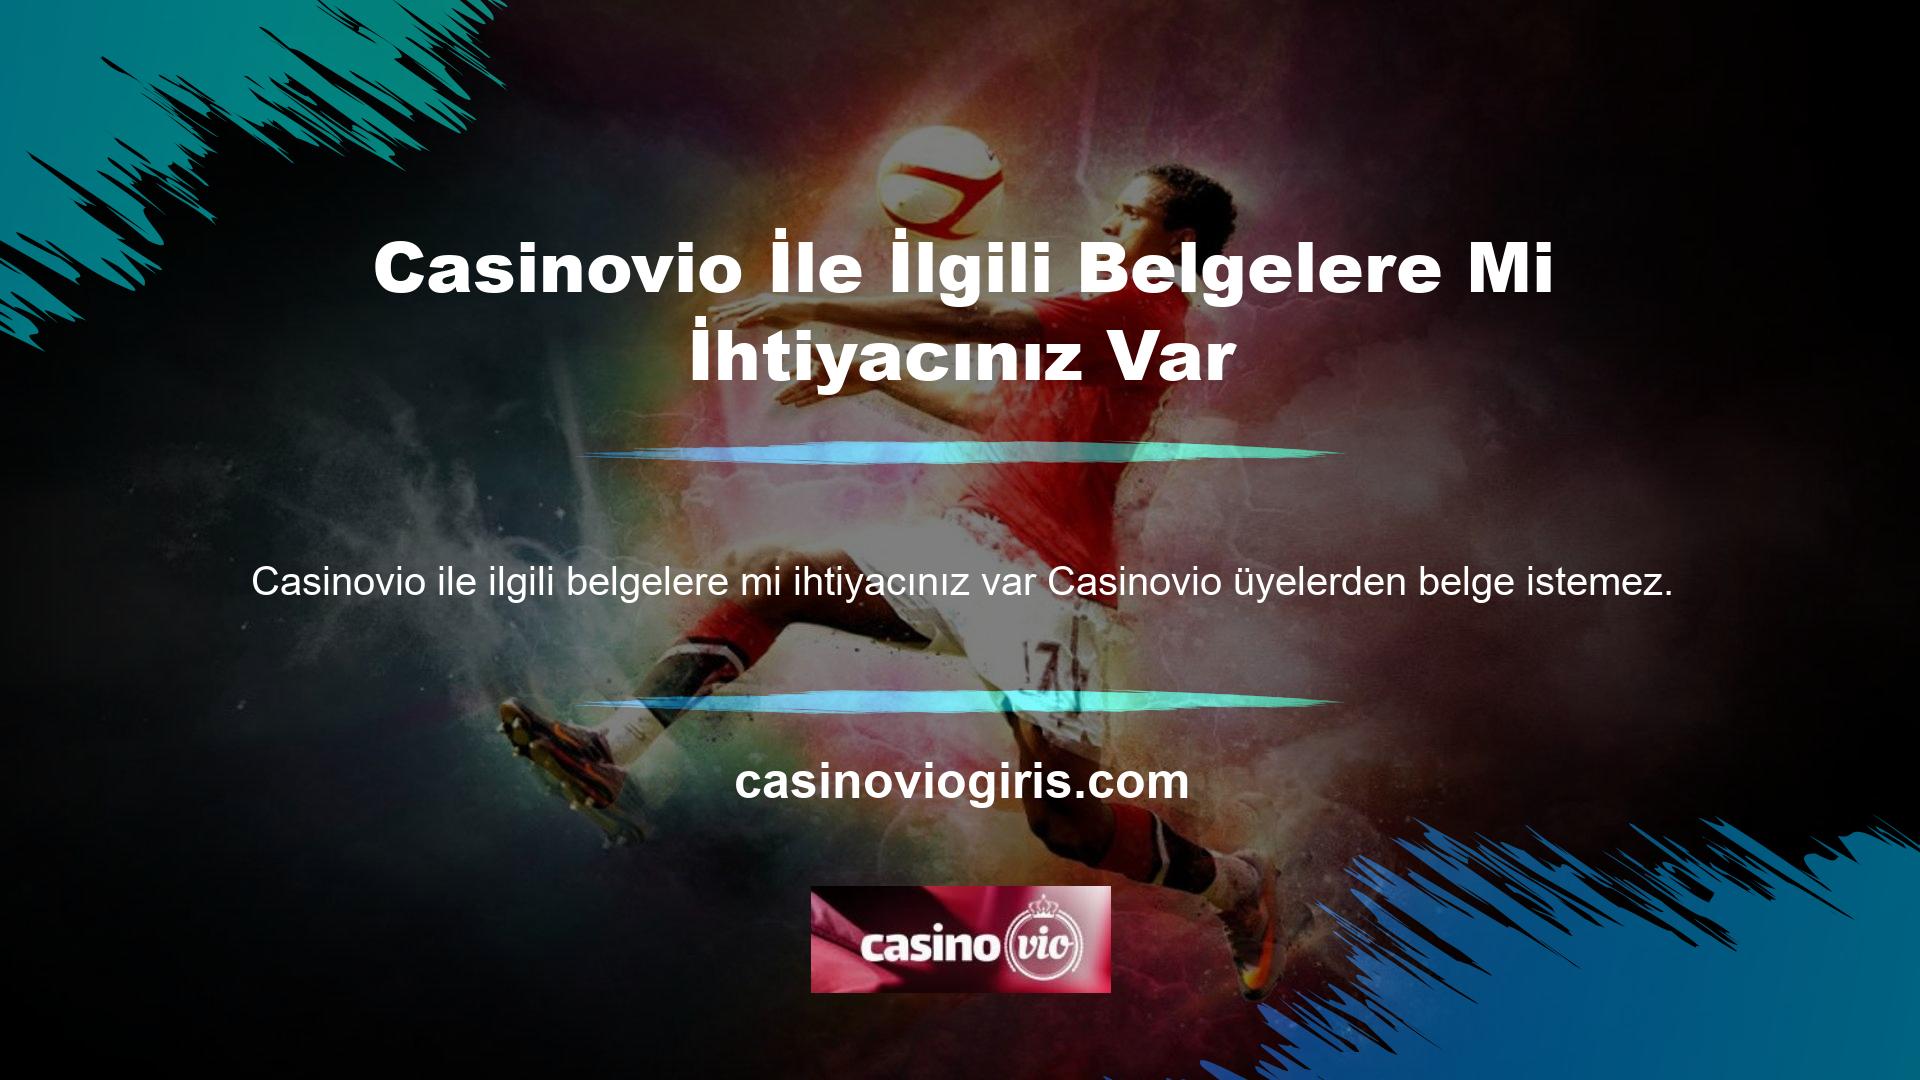 Casinovio, üyelik veya finansal işlemler için belge istemeyen belgesiz bahis sitelerinden biridir